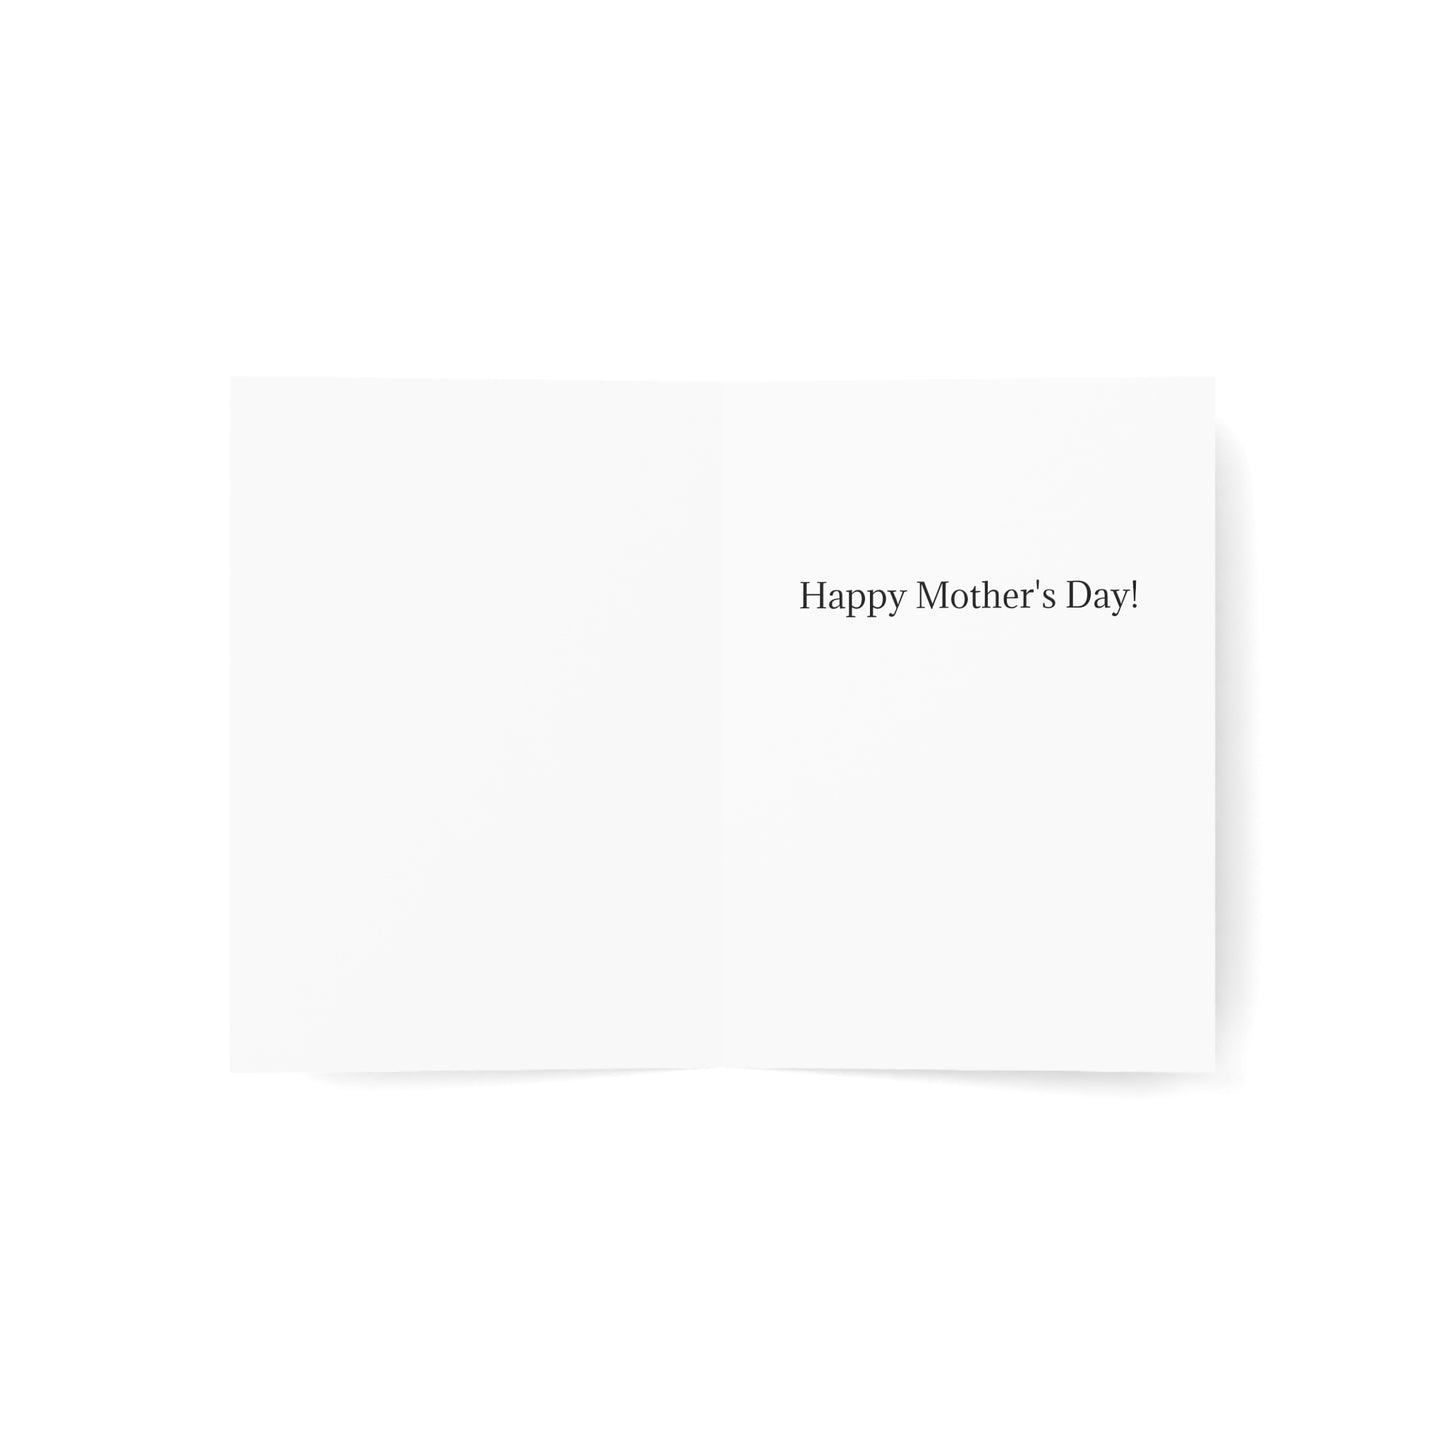 Adorable mésange huppée "Hey Cutie !" - Cartes de vœux pliées à l'intérieur.